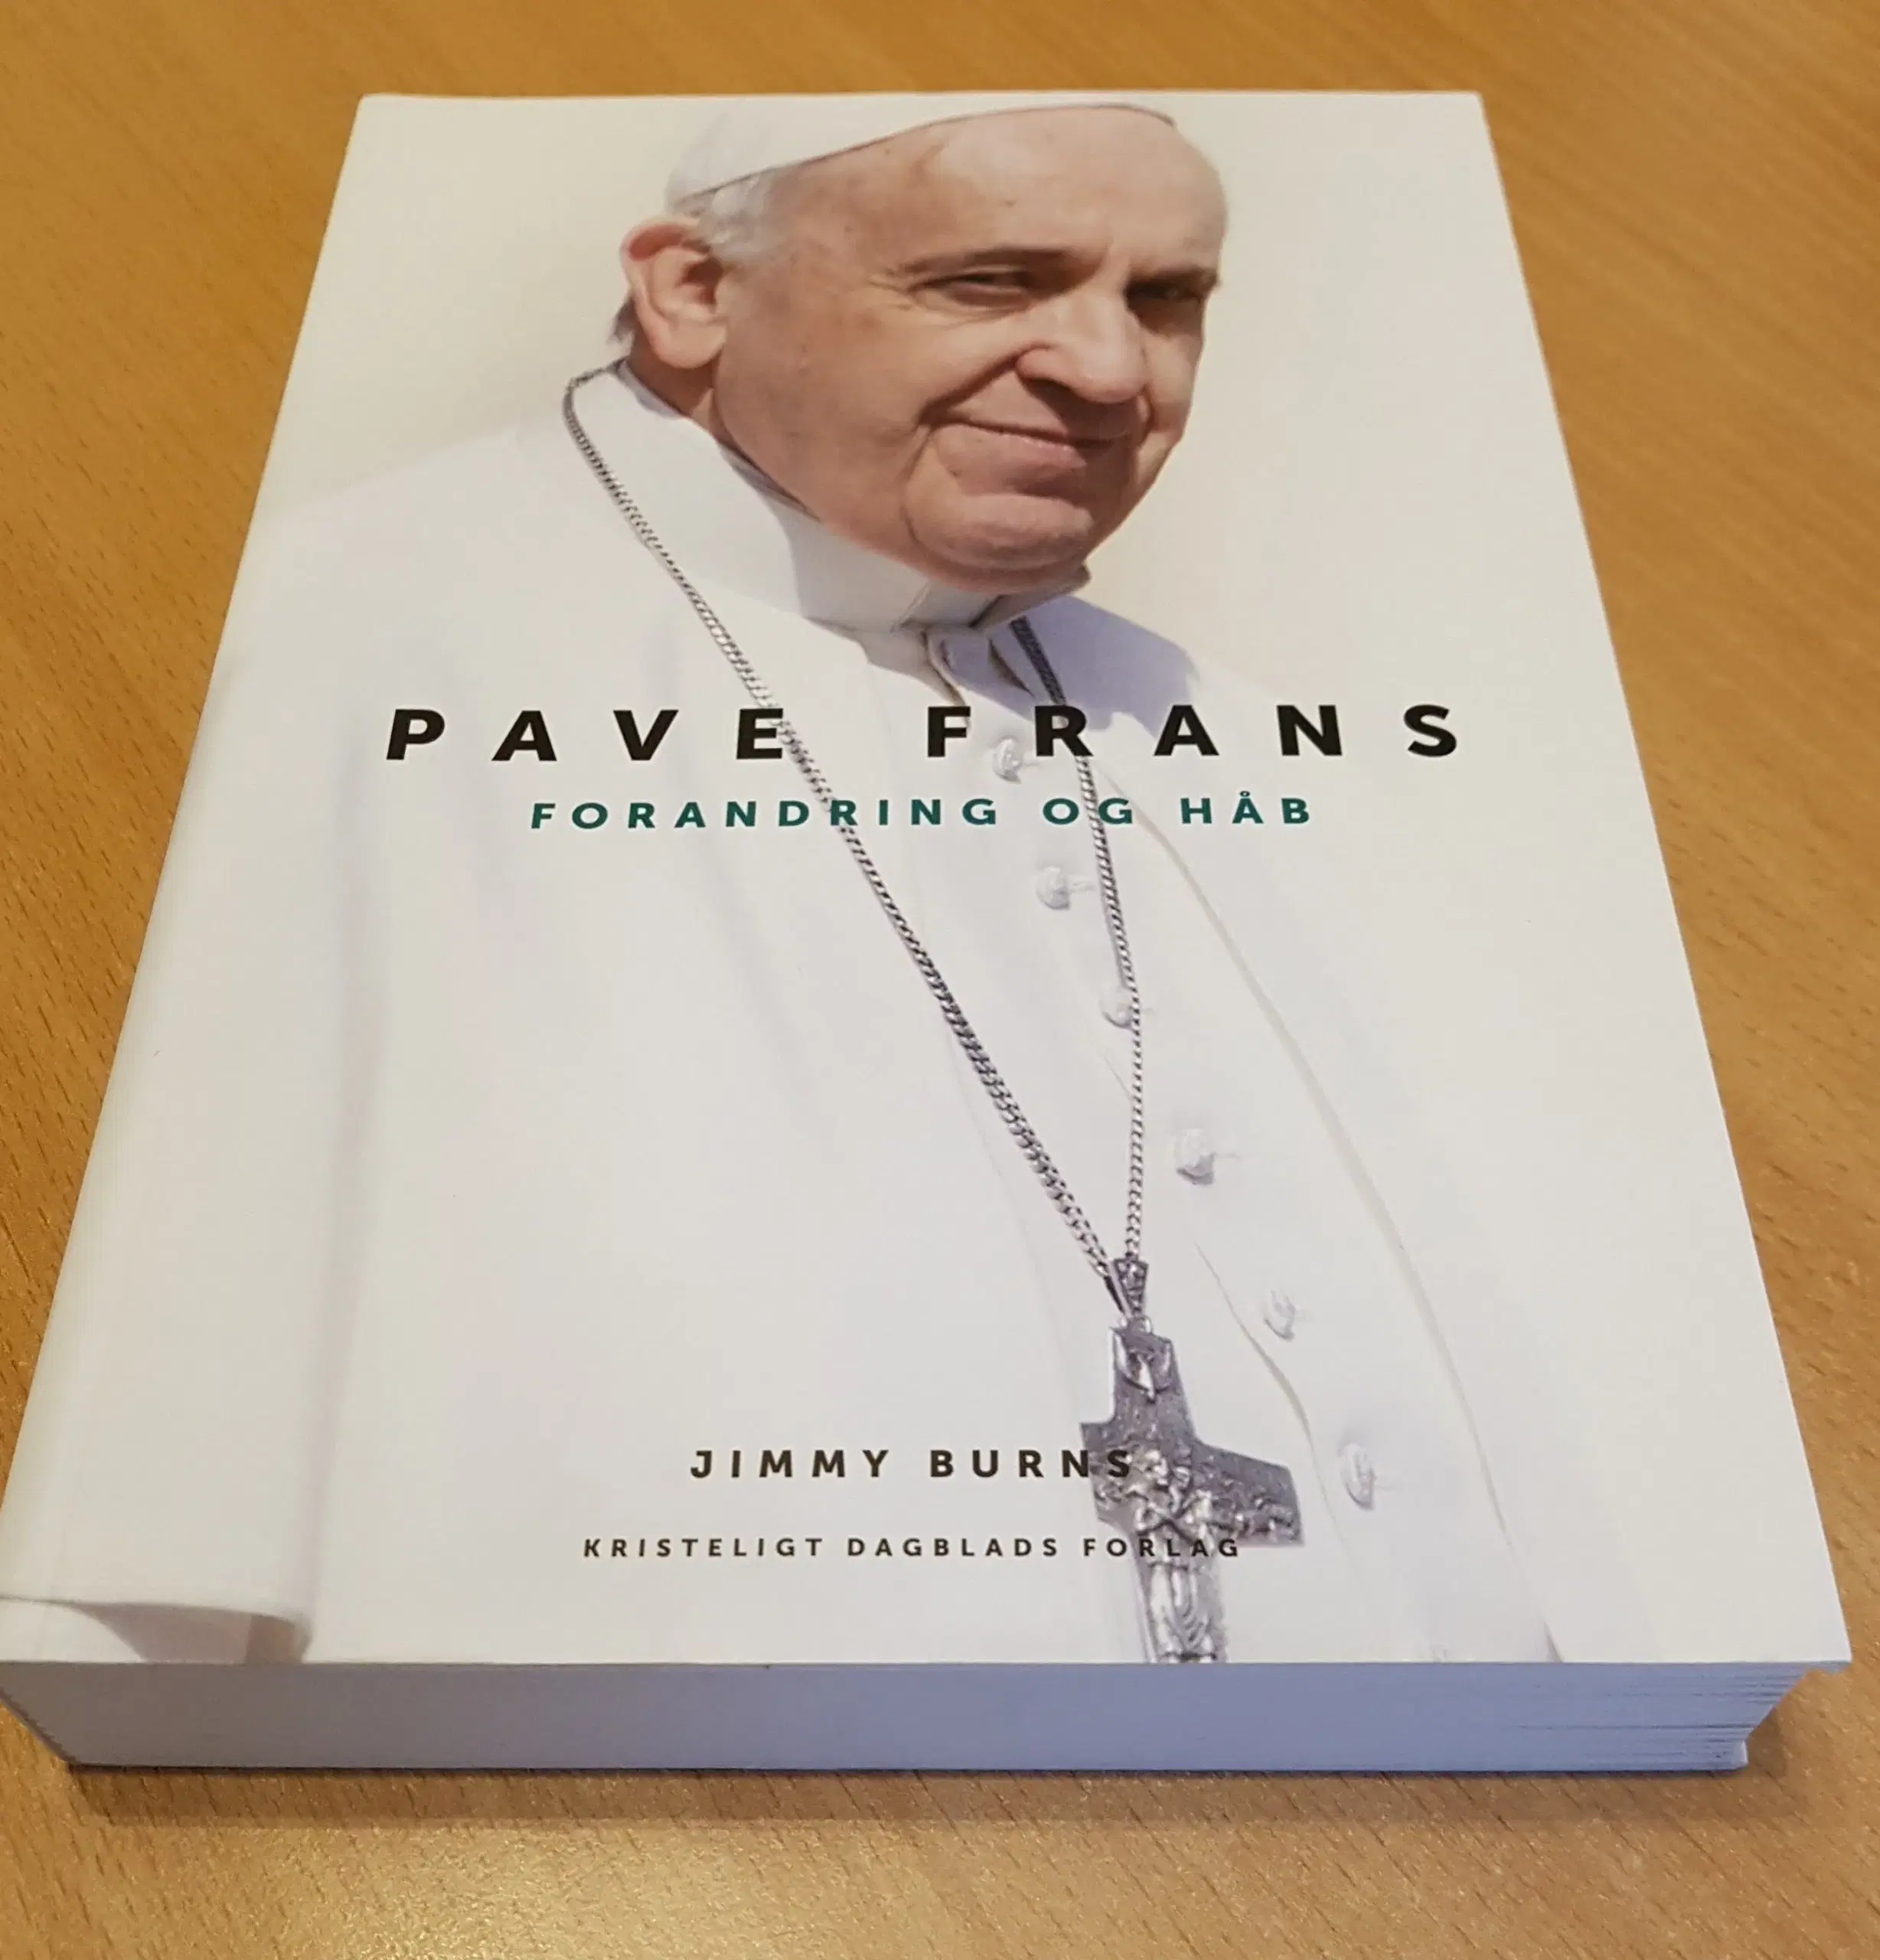 Pave Frans - forandring og håb